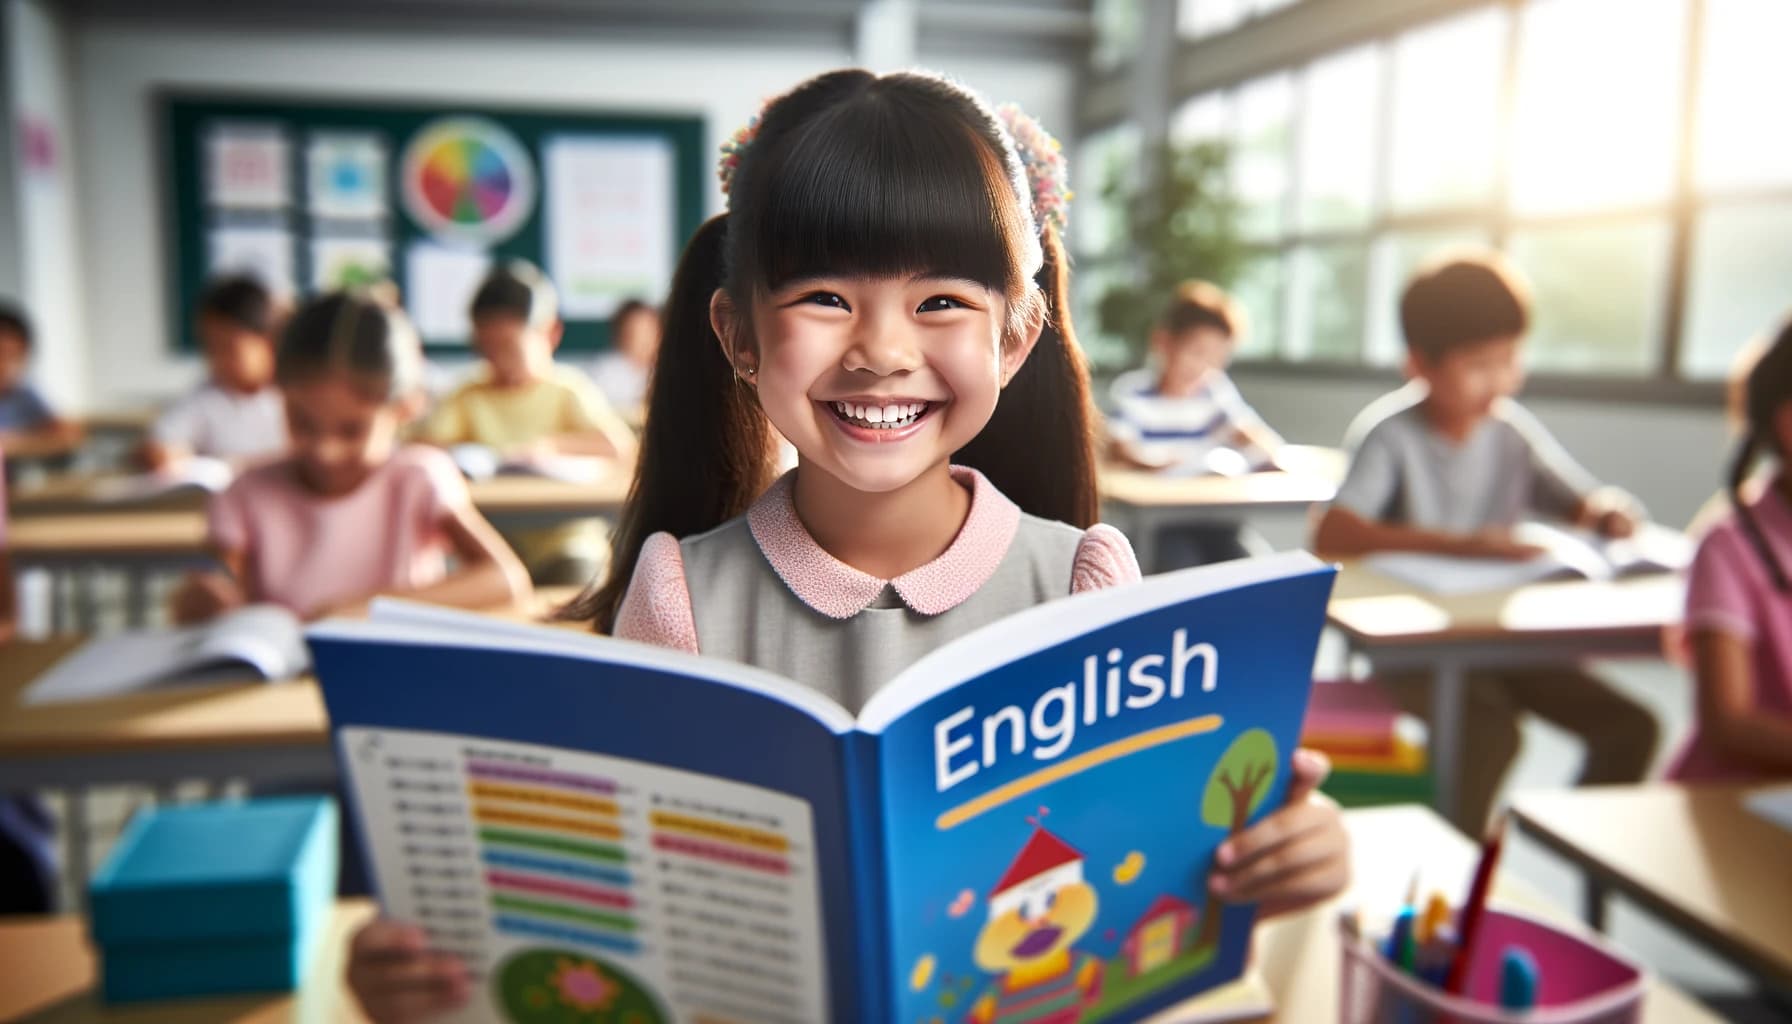 笑顔で英語の教科書を読む小学生